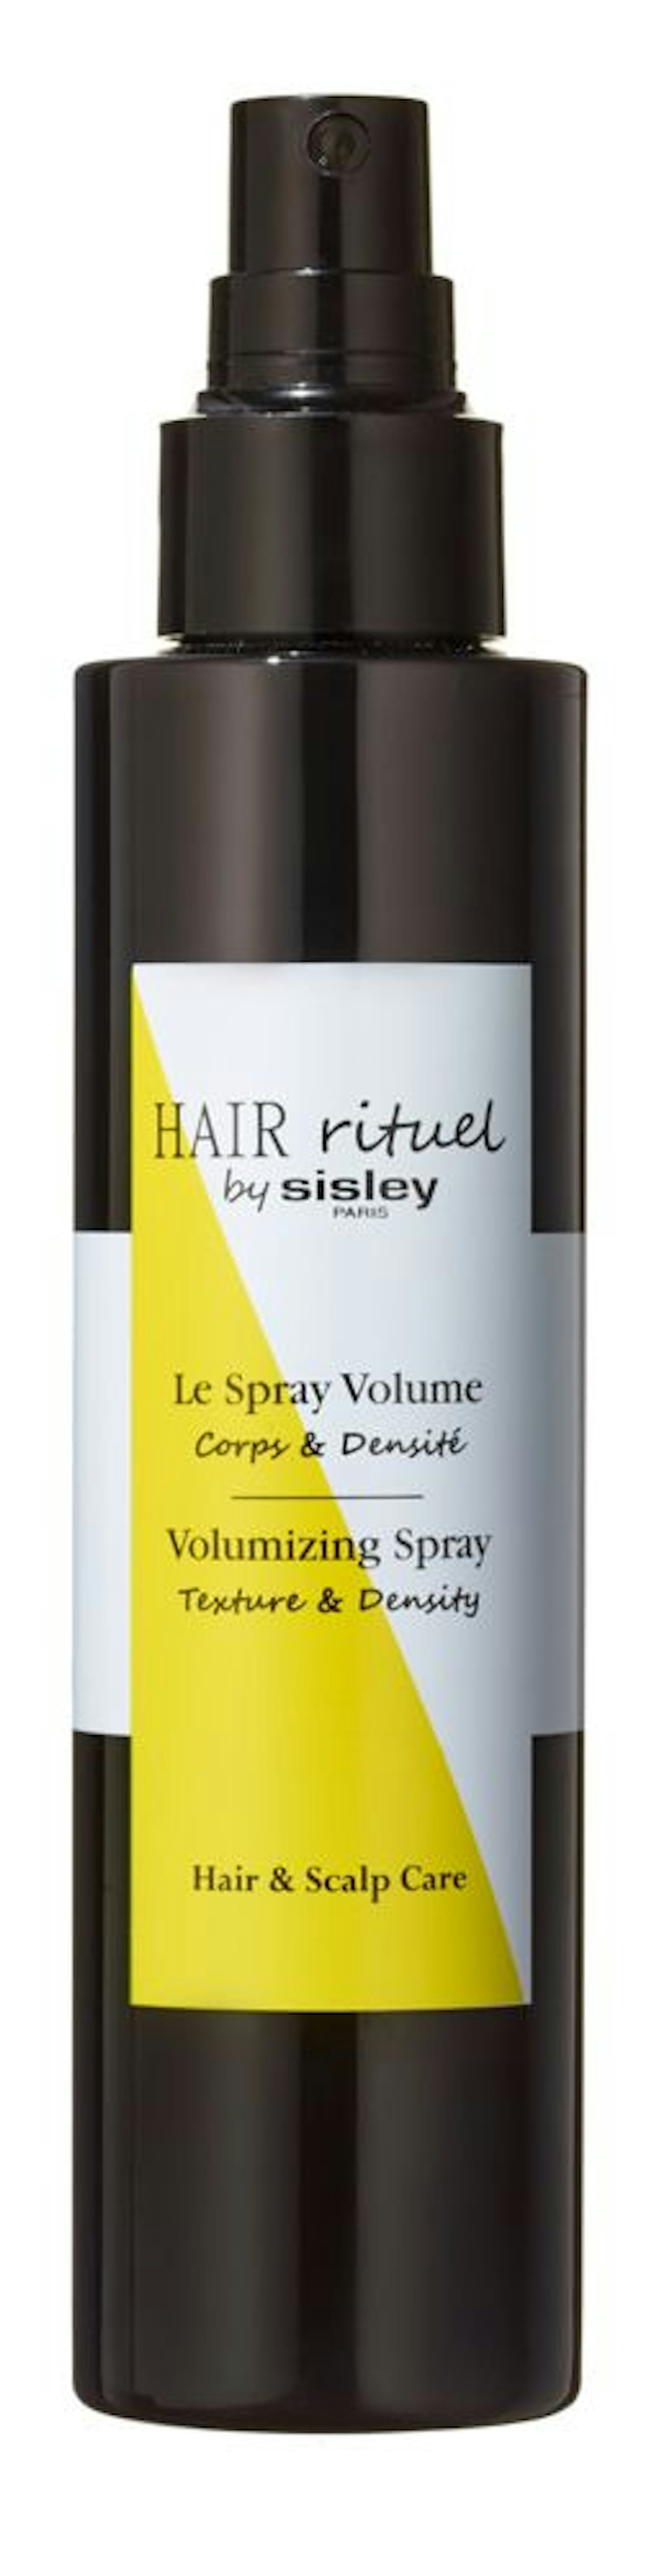 Hair Rituel by Sisley Volumizing Hair Spray, £66